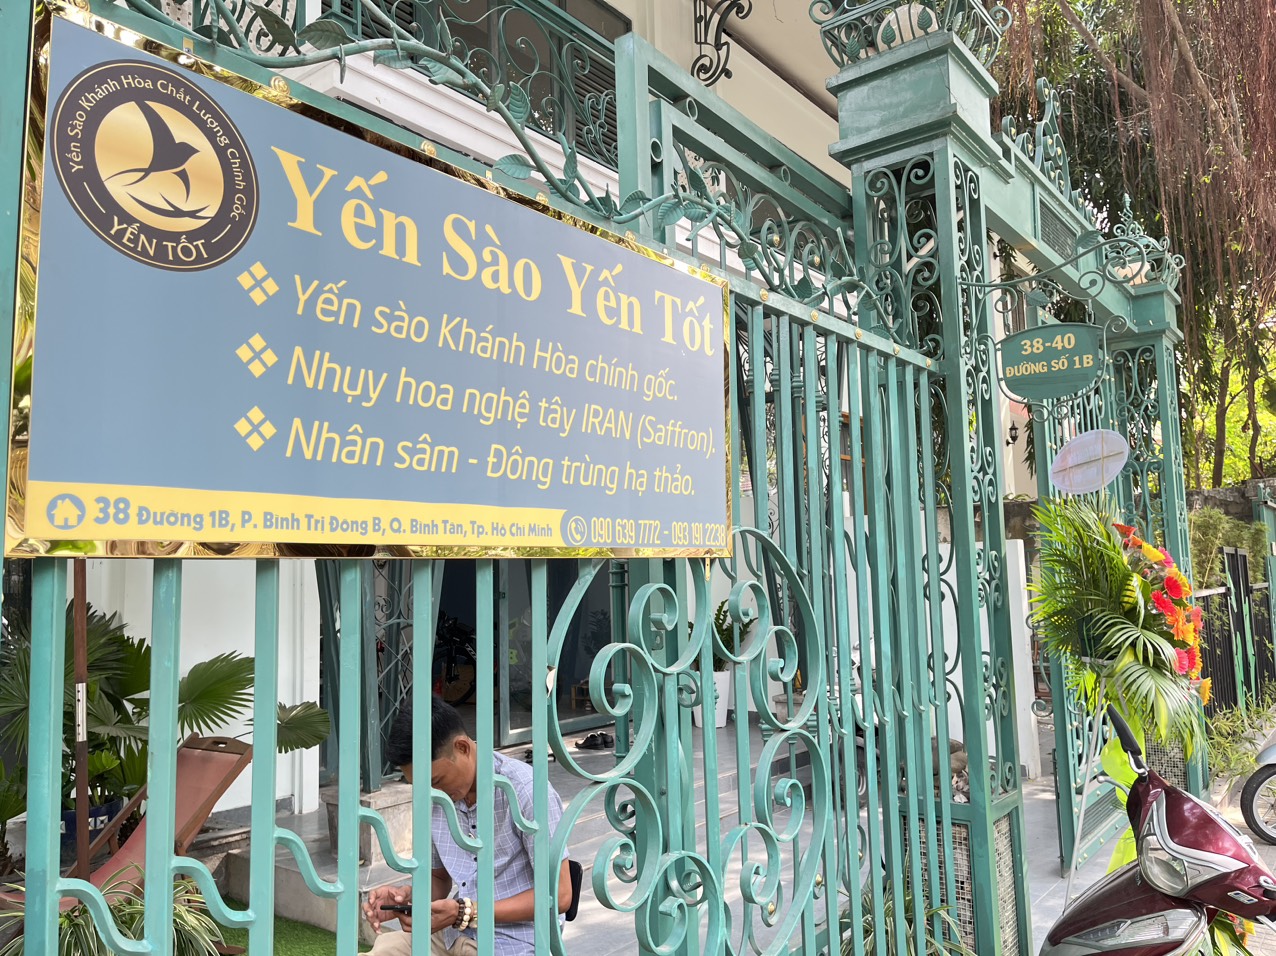 Shop Yến sào uy tín chất lượng quận Bình Tân